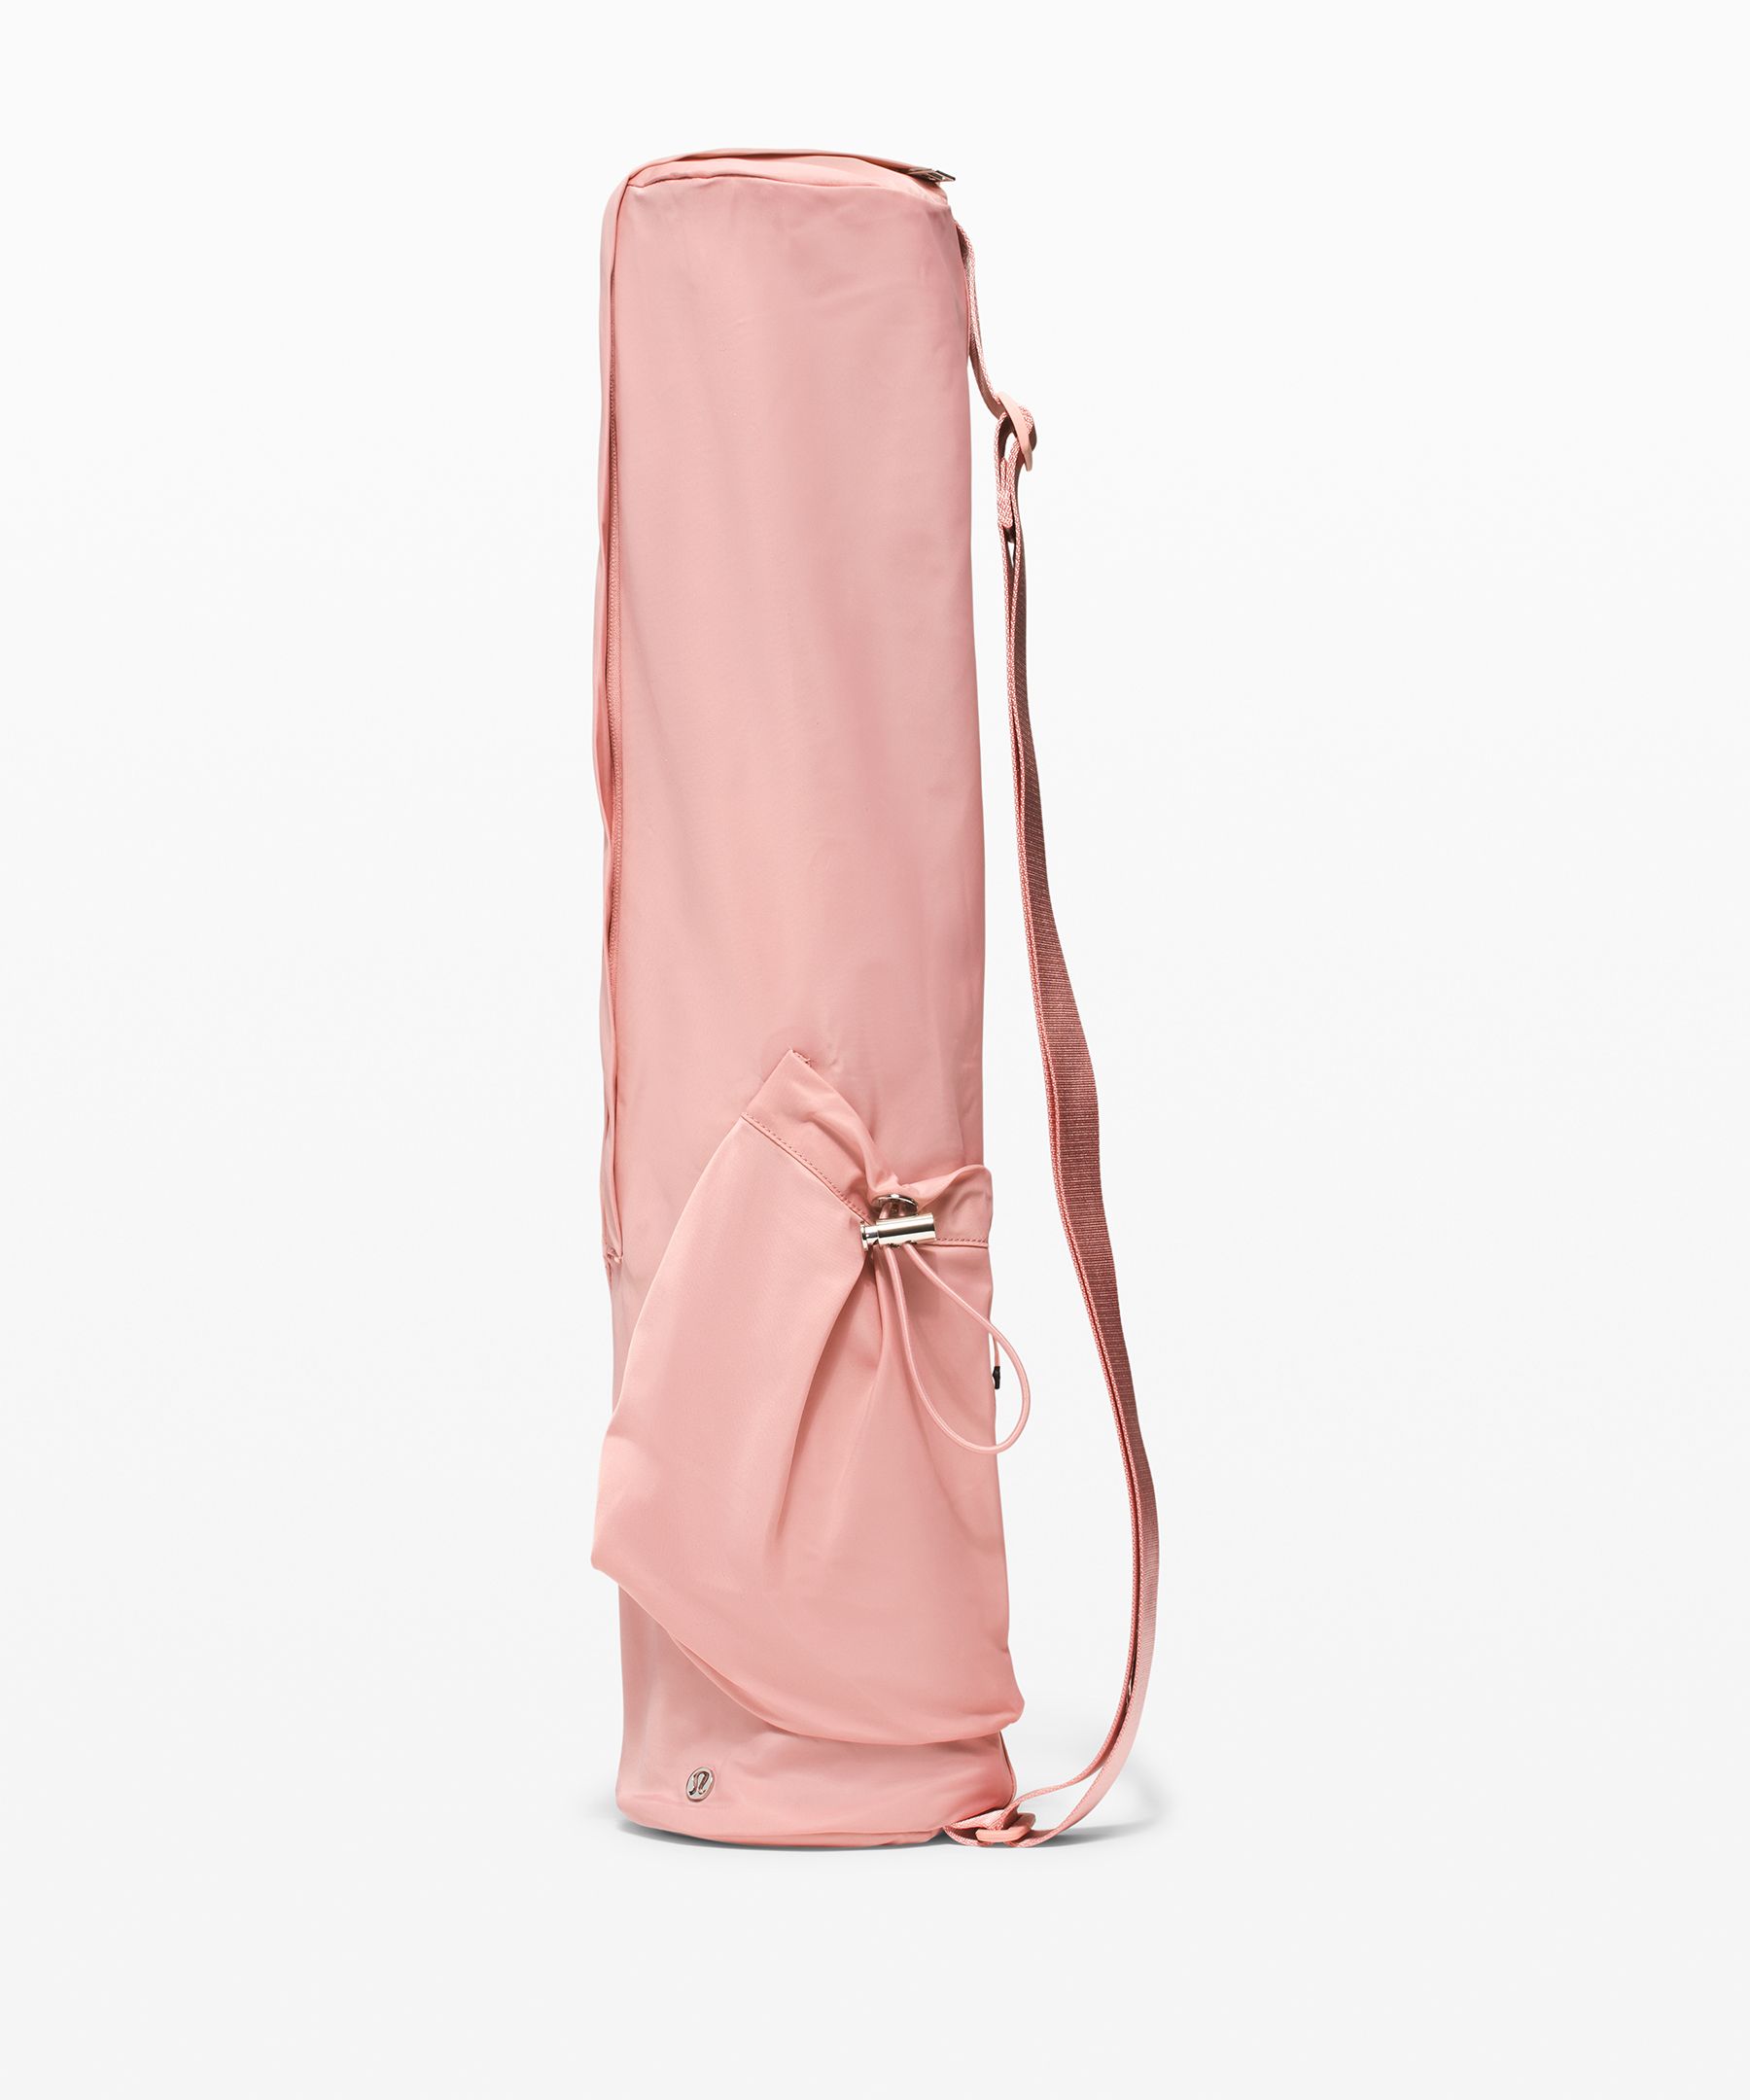 The Yoga Mat Bag 16L  lululemon Hong Kong SAR